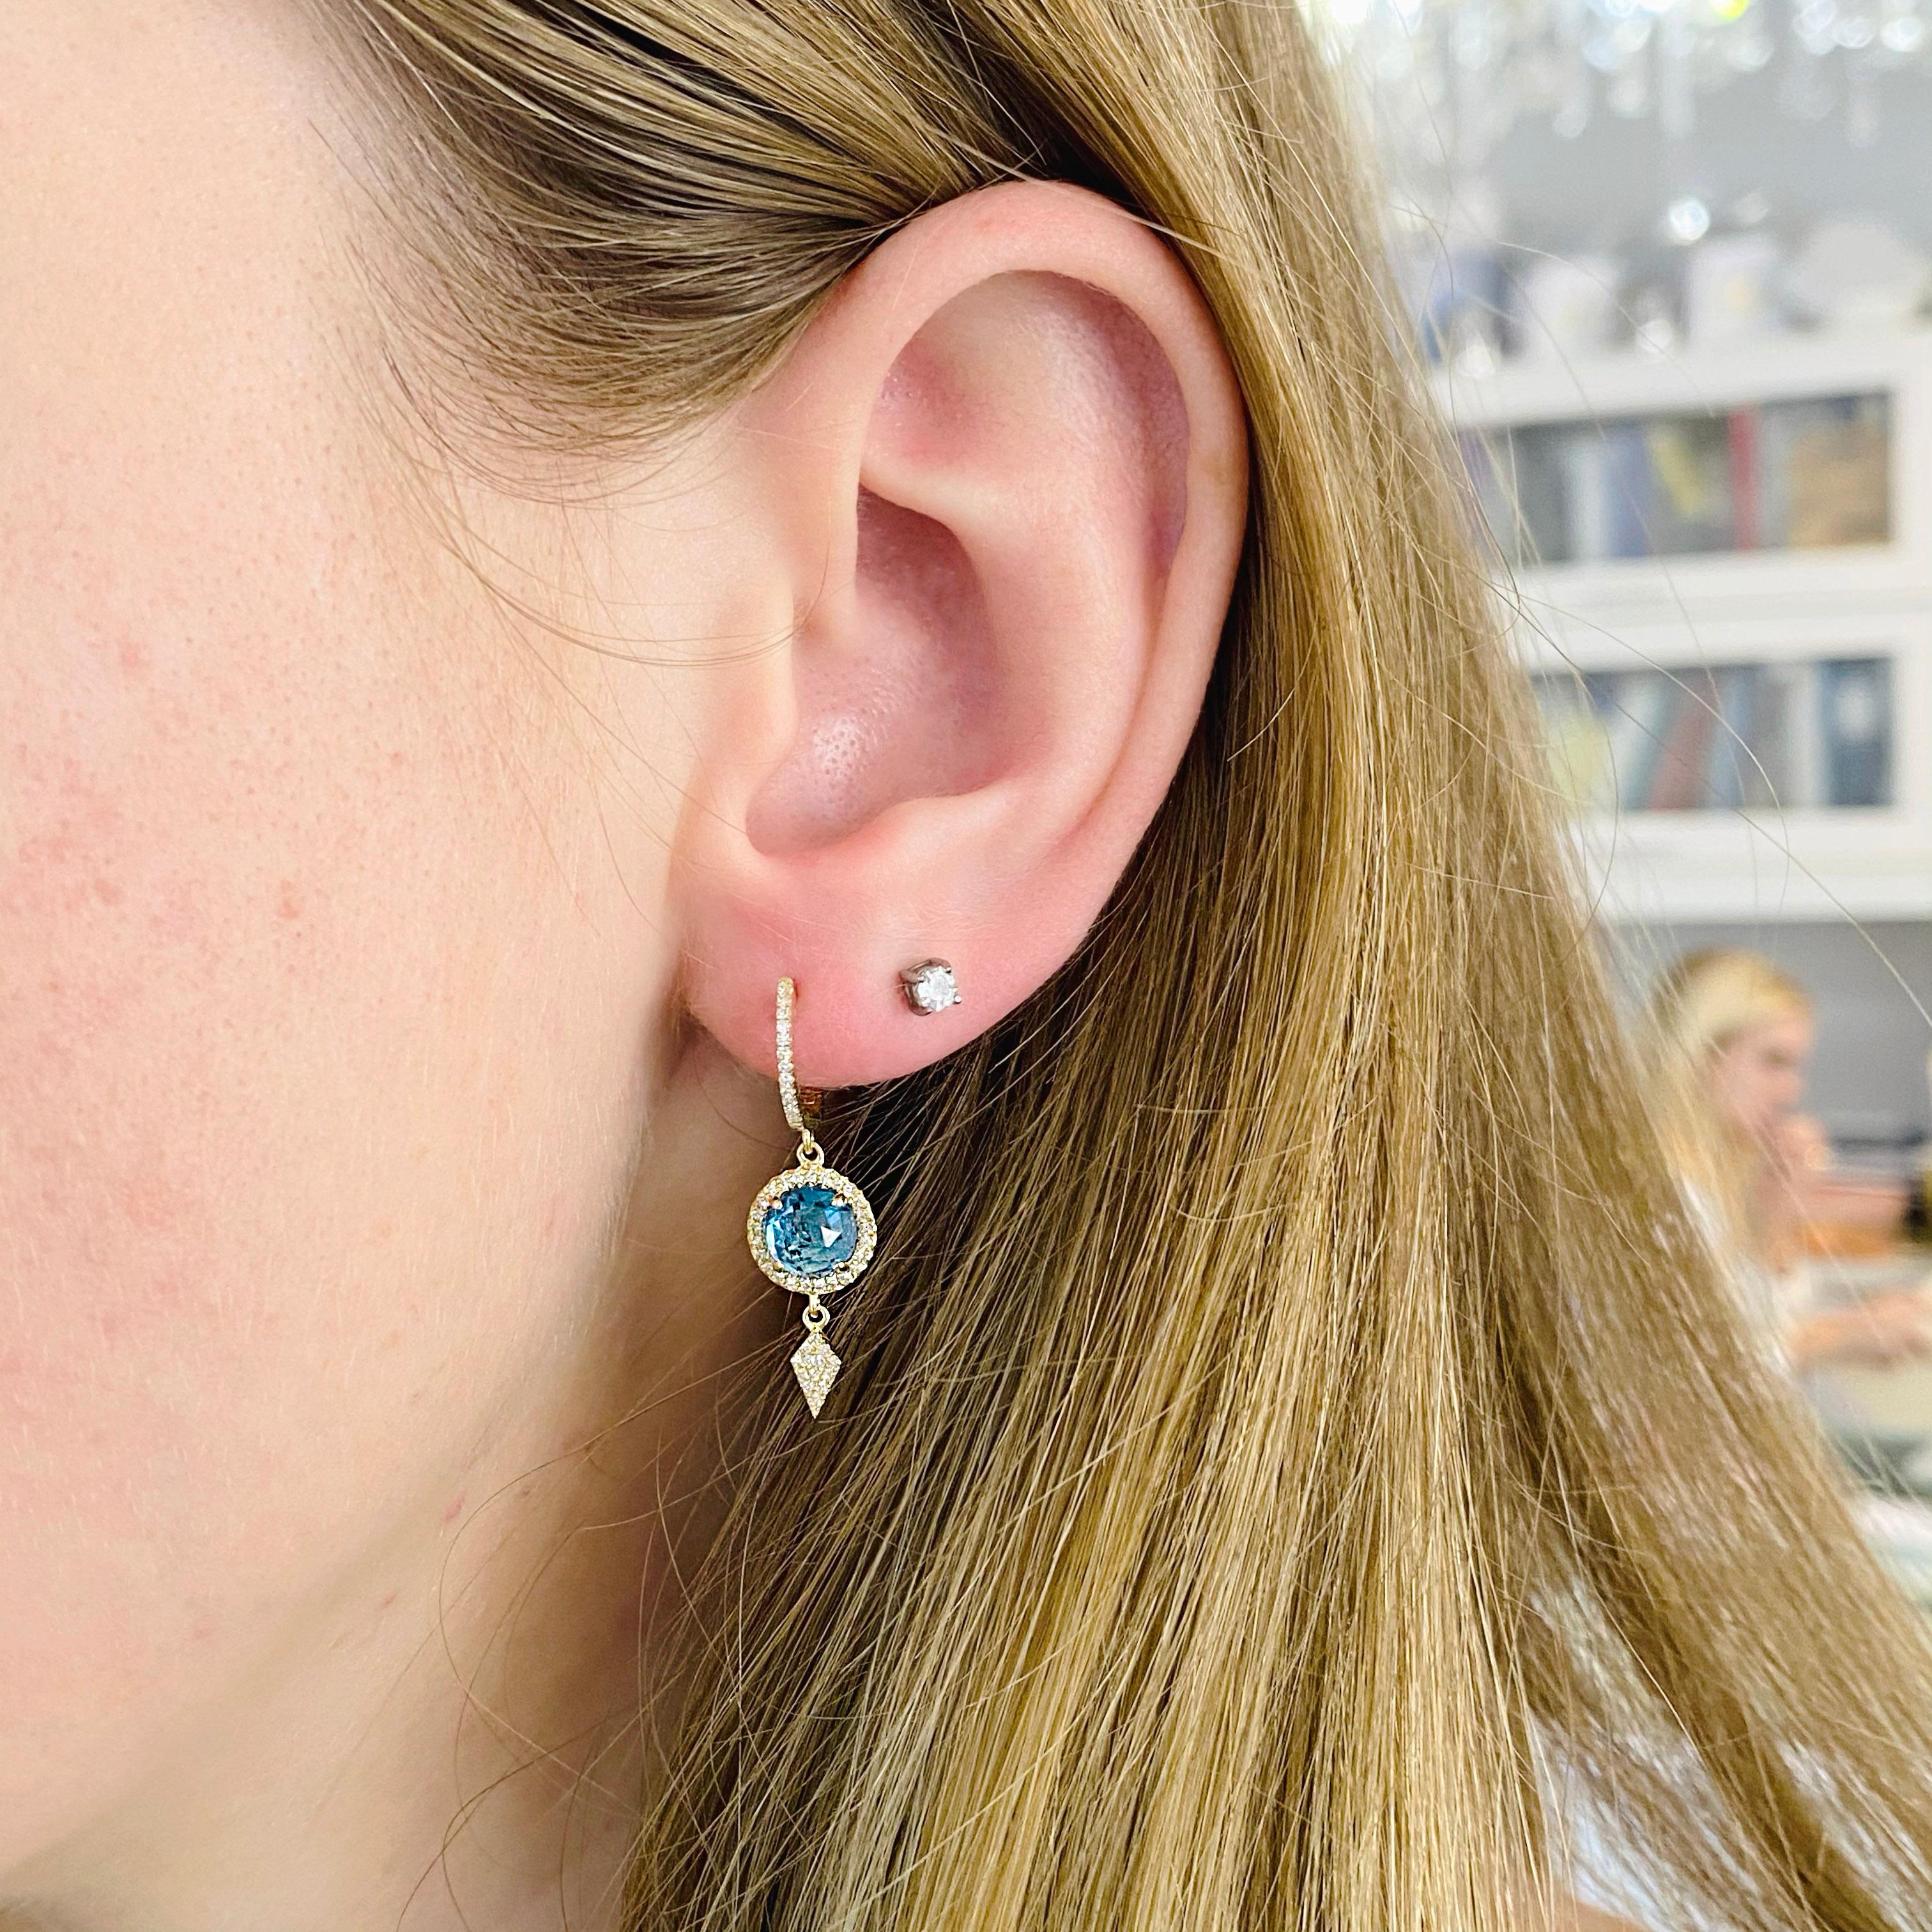 Diese schönen Ohrringe aus königsblauem Topas und Diamanten sind so kostbar!  Sie bestehen aus einem Diamanten an der Spitze und einem blauen Topas in jedem Ohrring mit einem Halo aus Diamanten um sie herum.  Die Ohrringe sind beweglich, da jeder